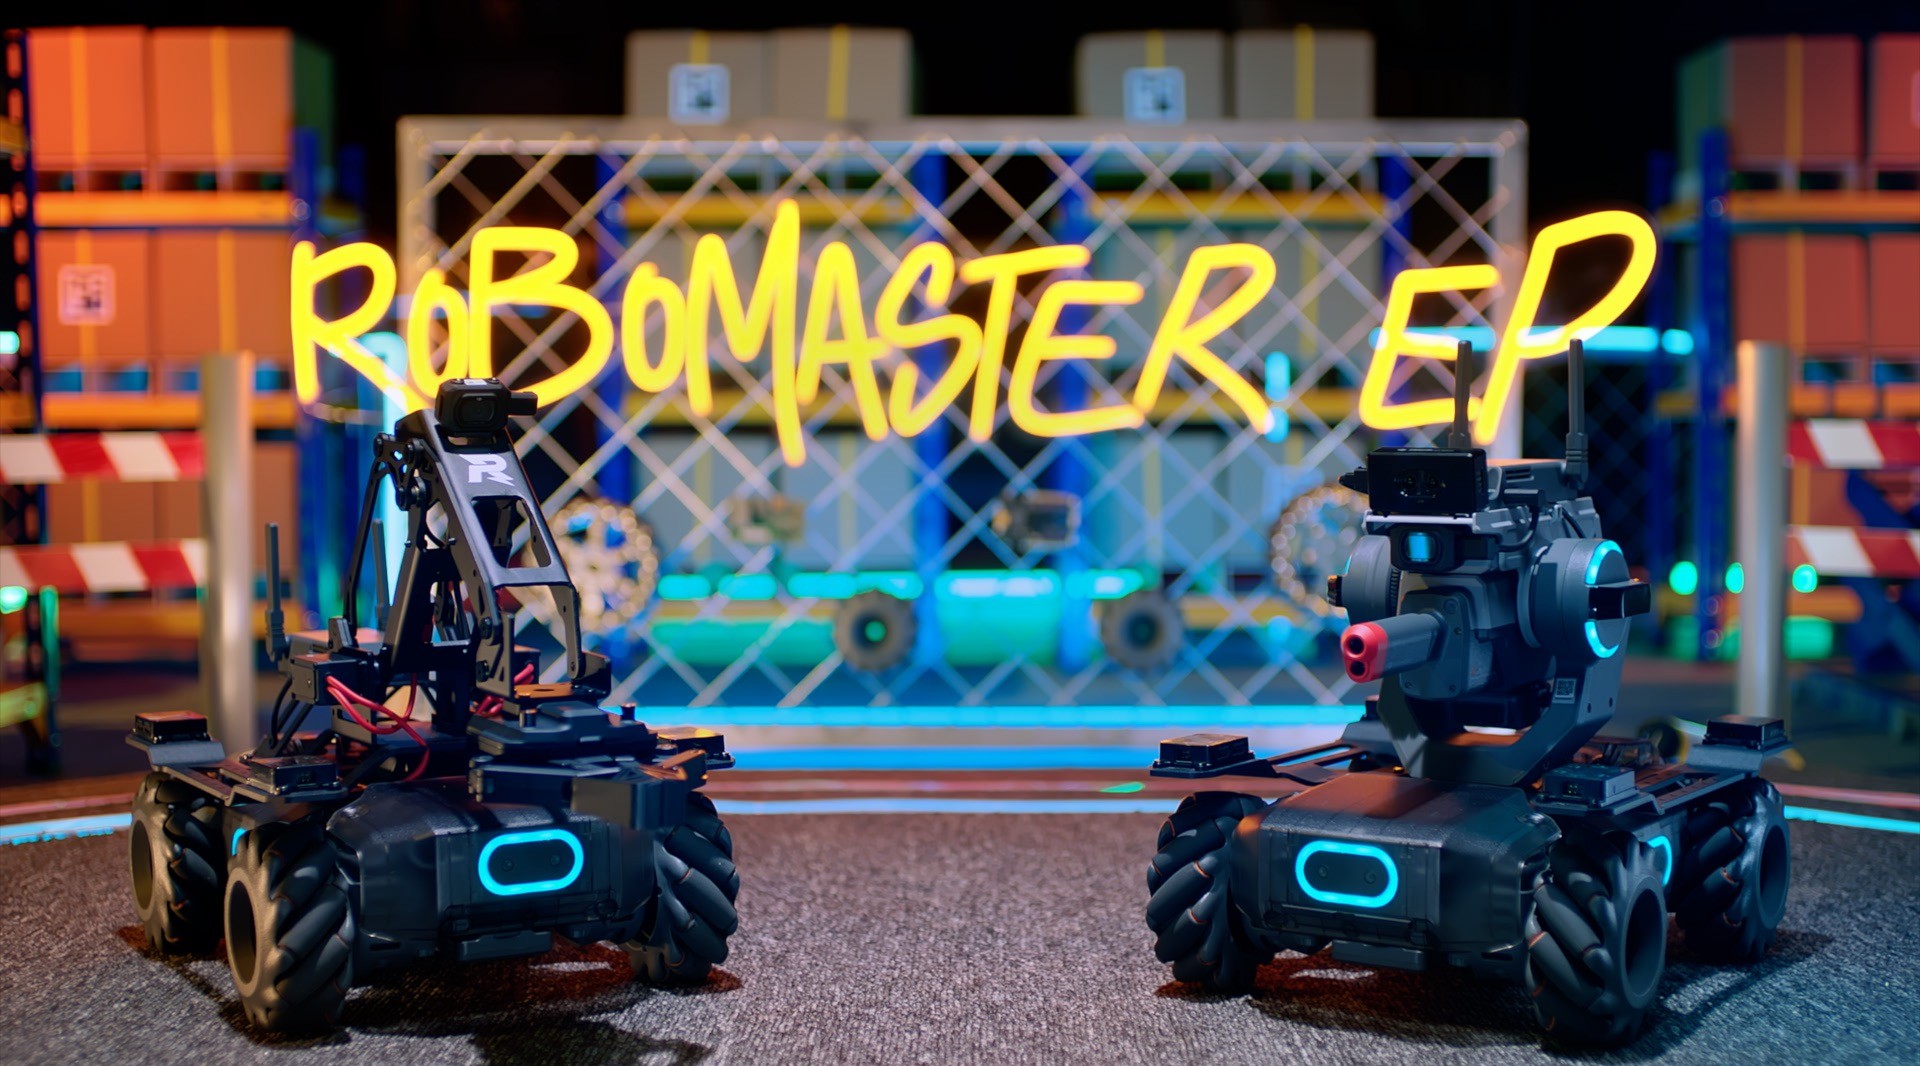 DJI 大疆机甲大师 RoboMaster EP 介绍视频 